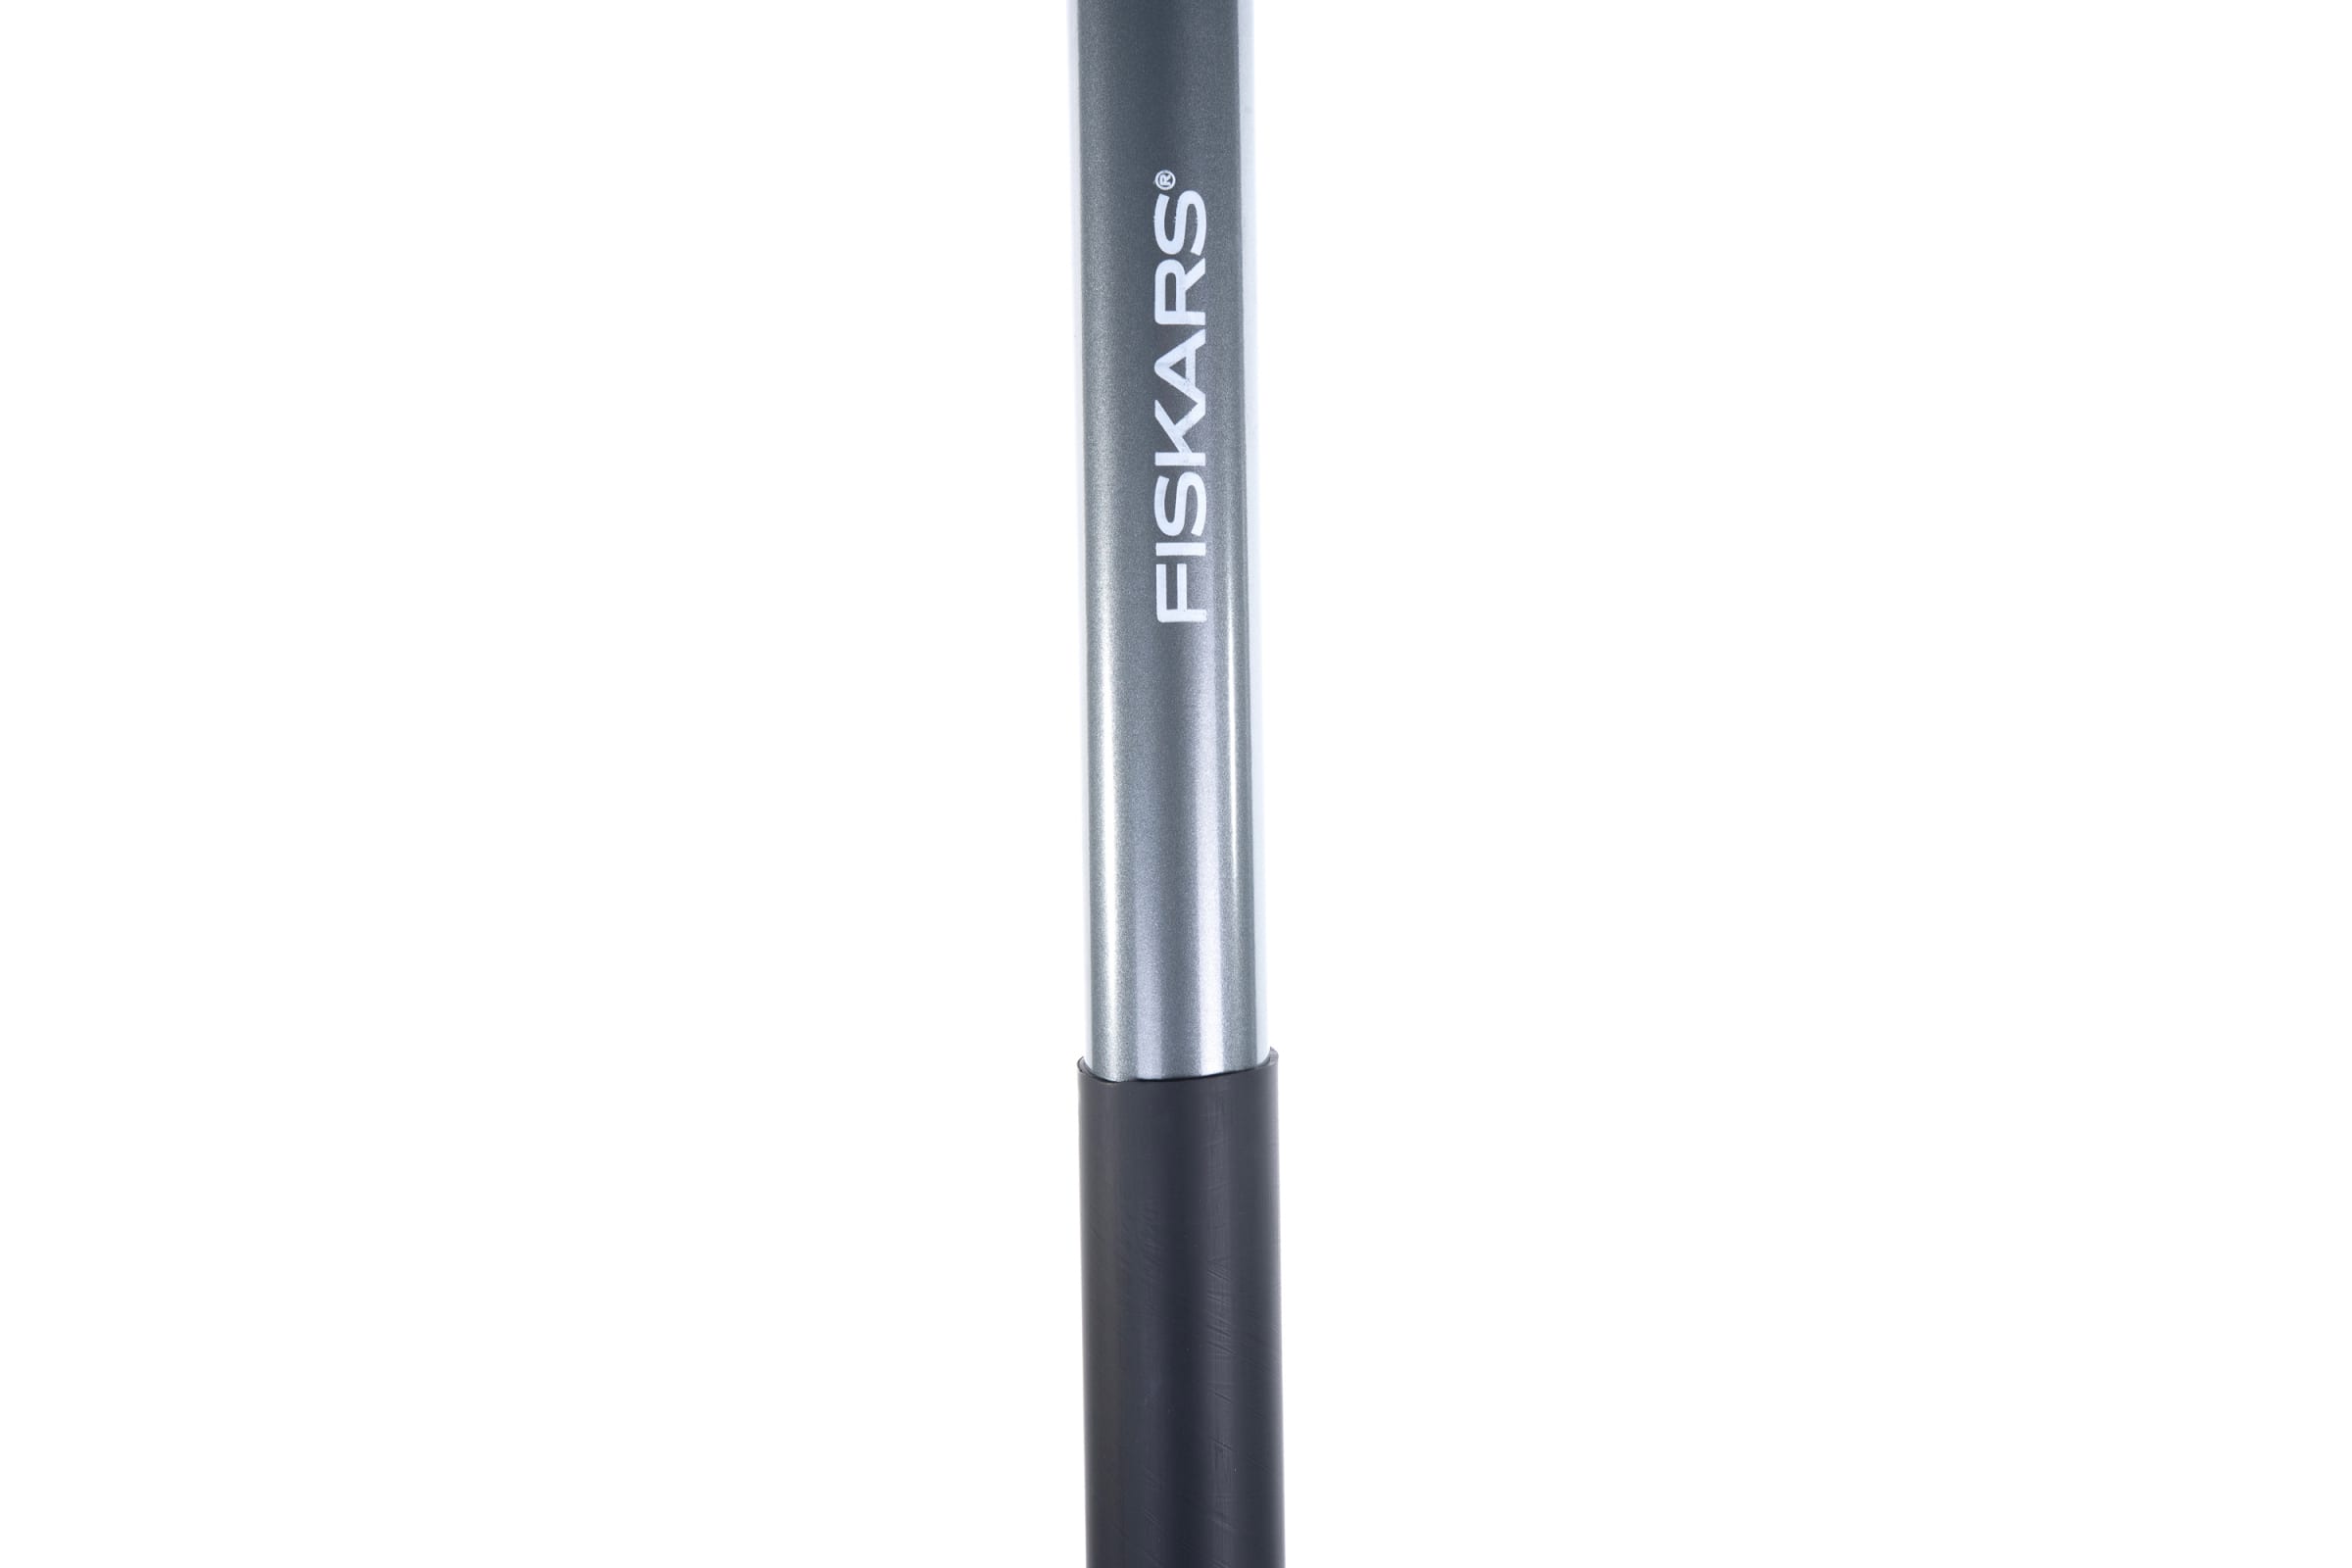 Штыковая лопата Fiskars Solid PROF (1050649)